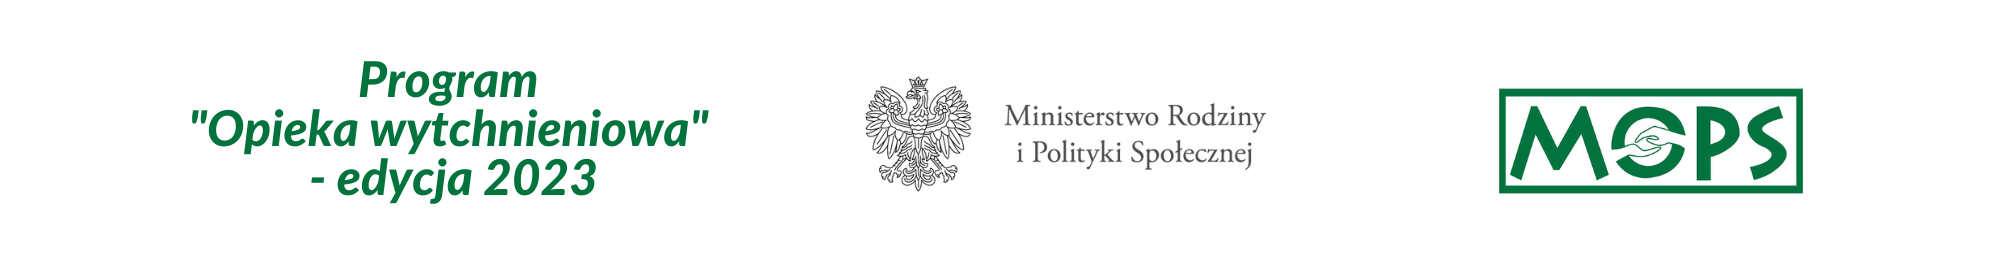 opieka wytchnieniowa 2023 logo mops godło Polski